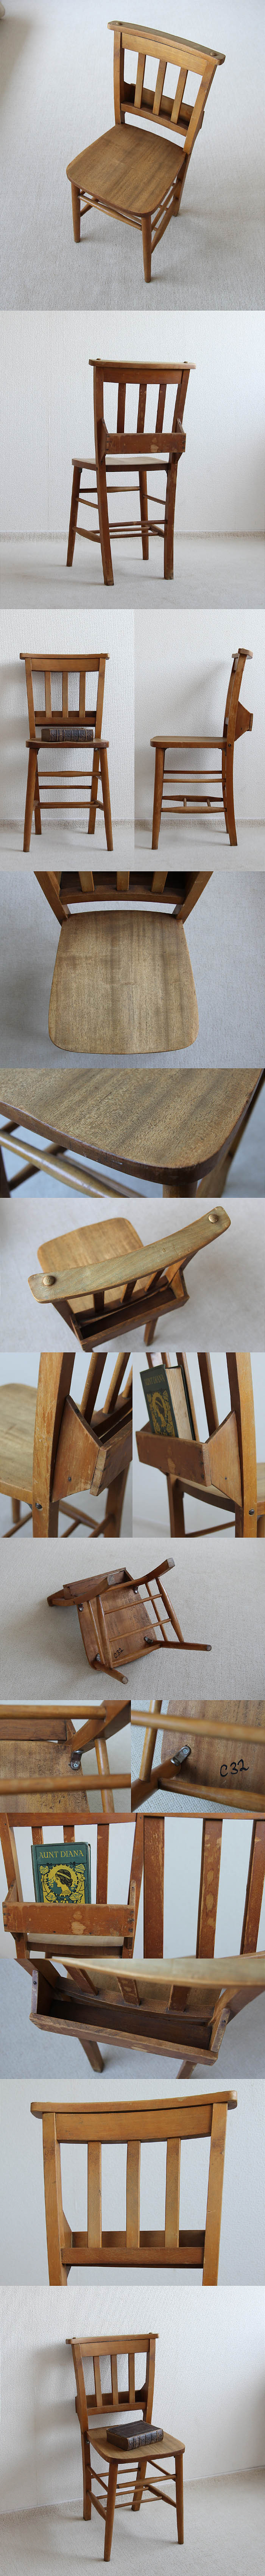 イギリス アンティーク調 チャーチチェア 教会椅子 カントリー インテリア 家具「聖書BOX付」V-927